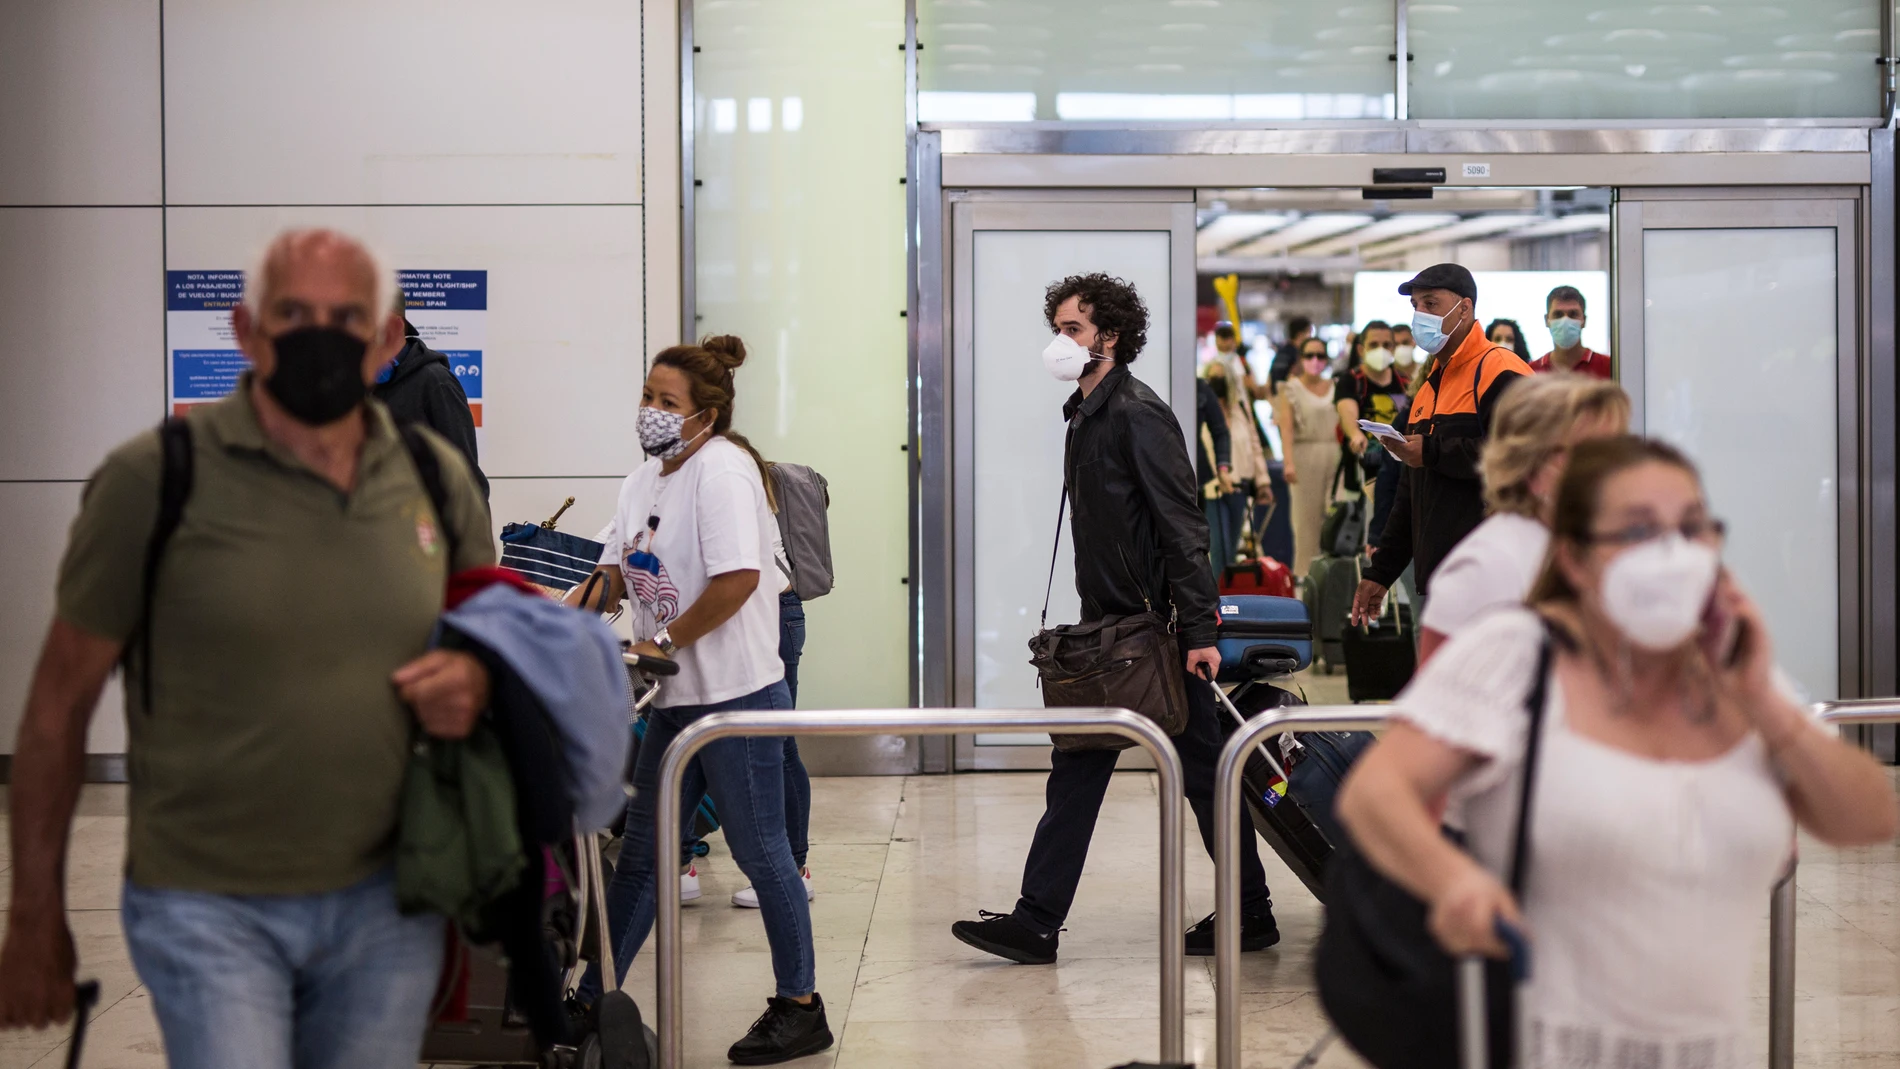 Pasajeros de un vuelo procedente de Quito a su llegada a las instalaciones de la Terminal T4 del Aeropuerto Adolfo Suárez Madrid-Barajas, a 7 de junio de 2021, en Madrid